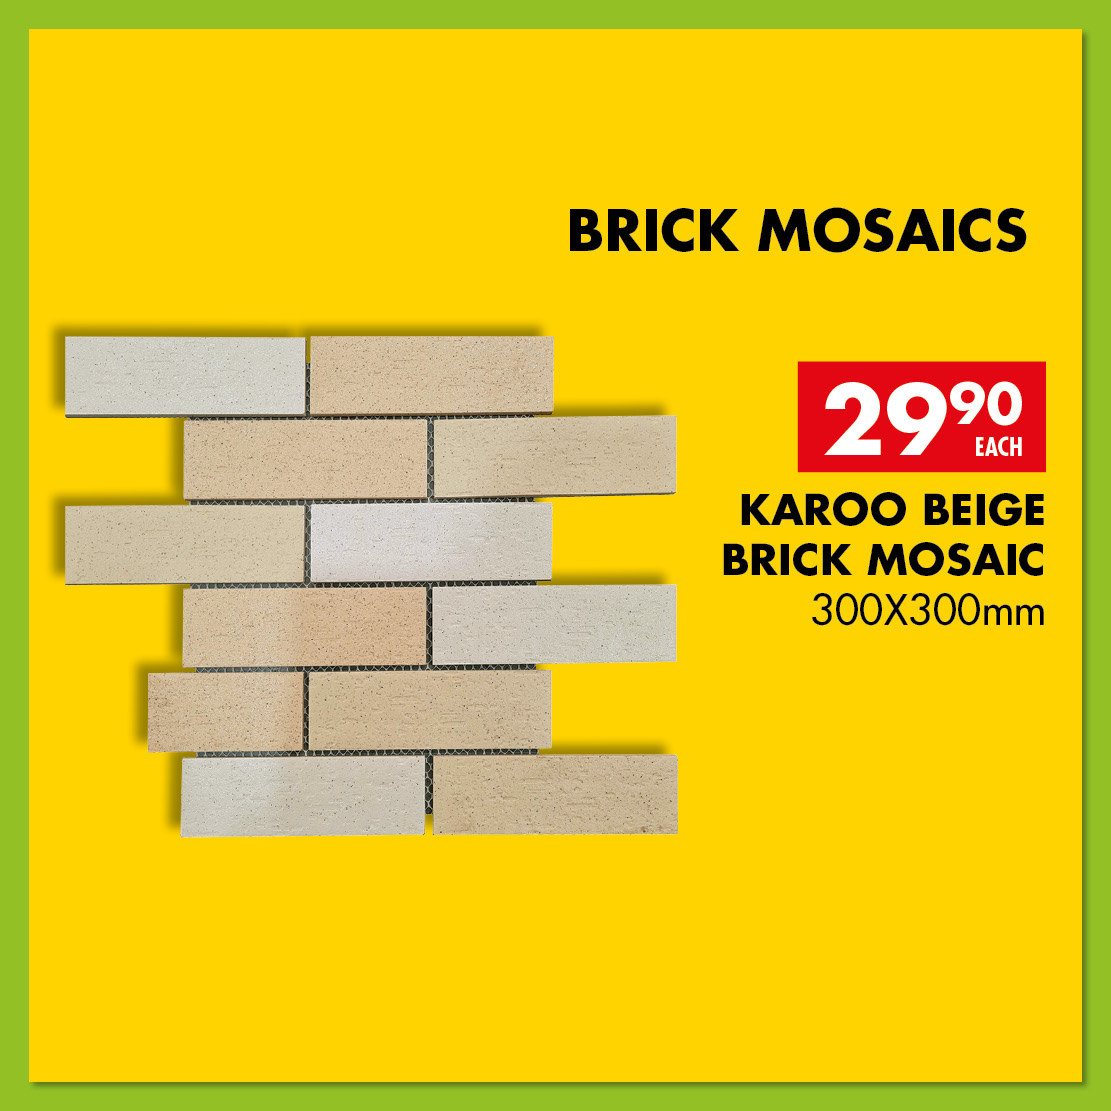 Karoo_beige_brick